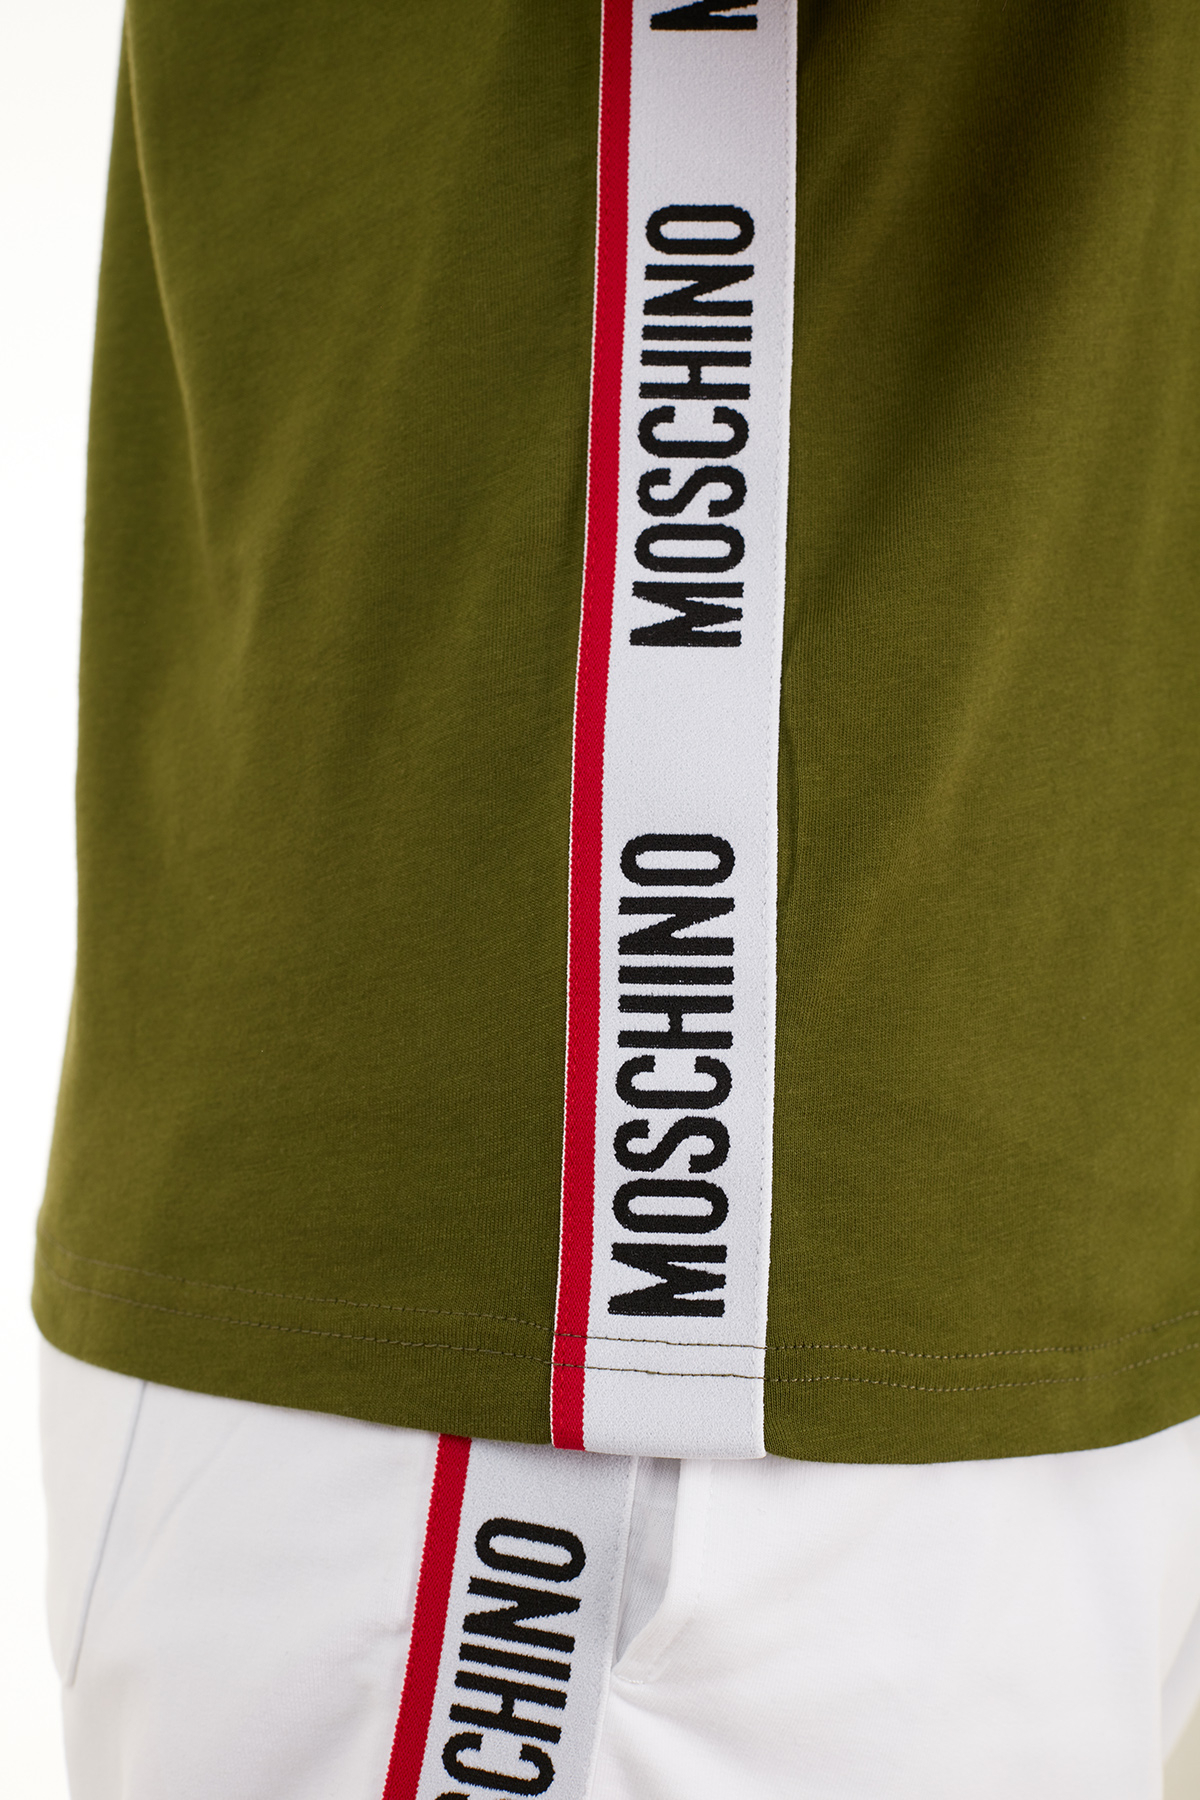 Moschino Logo Bantlı Bisiklet Yaka % 100 Pamuk Erkek T Shirt A1913 8108 0401 YEŞİL